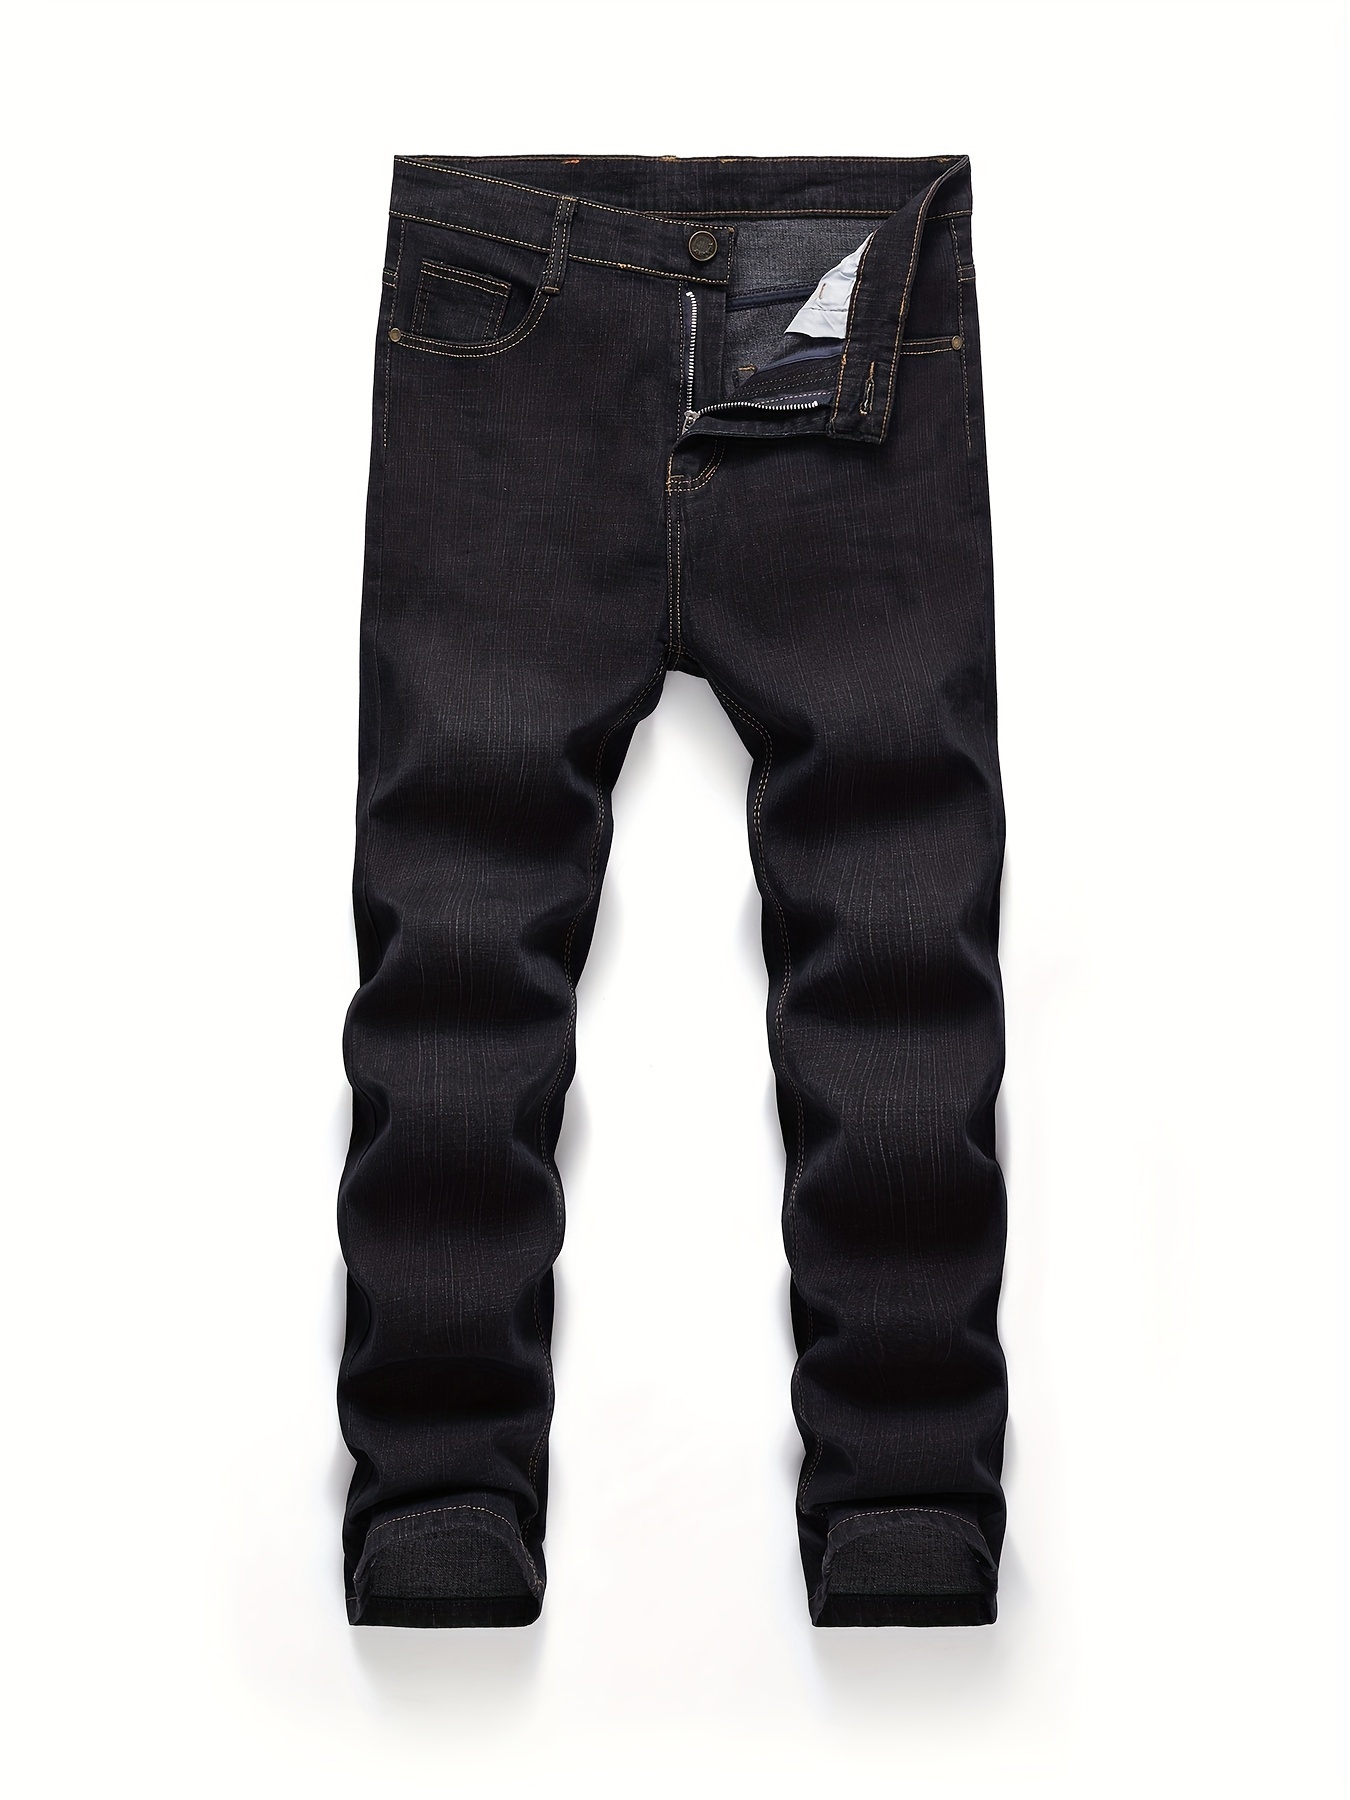 Полуформальные джинсы классического дизайна, мужские повседневные брюки из эластичной джинсовой ткани для бизнеса